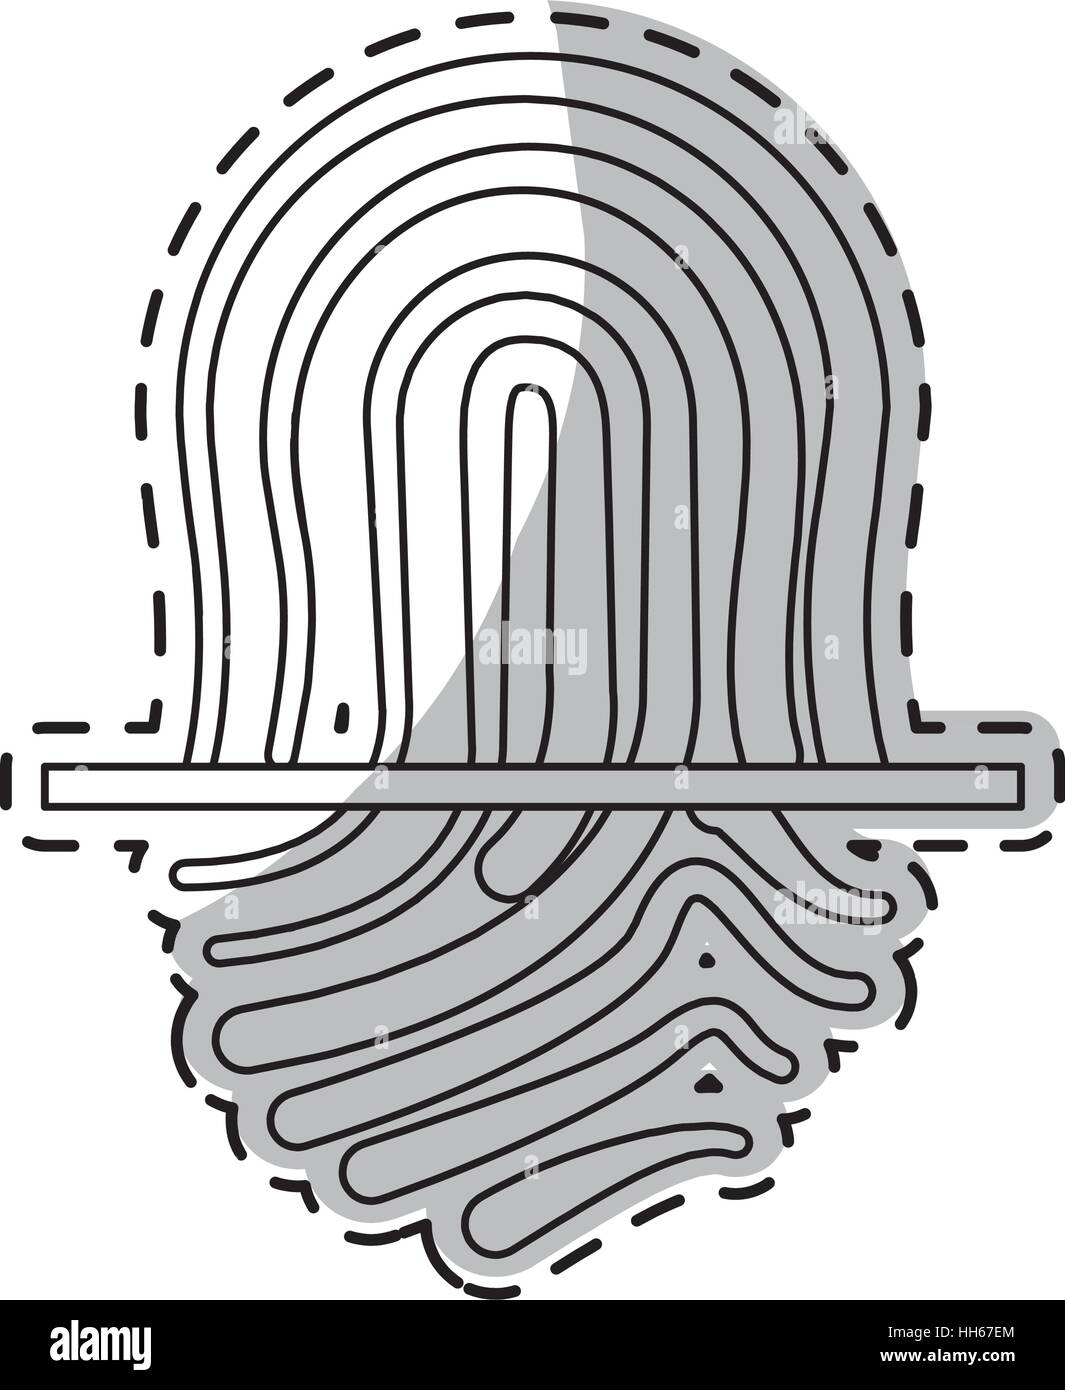 fingerprint icon over white background. vector illustration Stock Vector